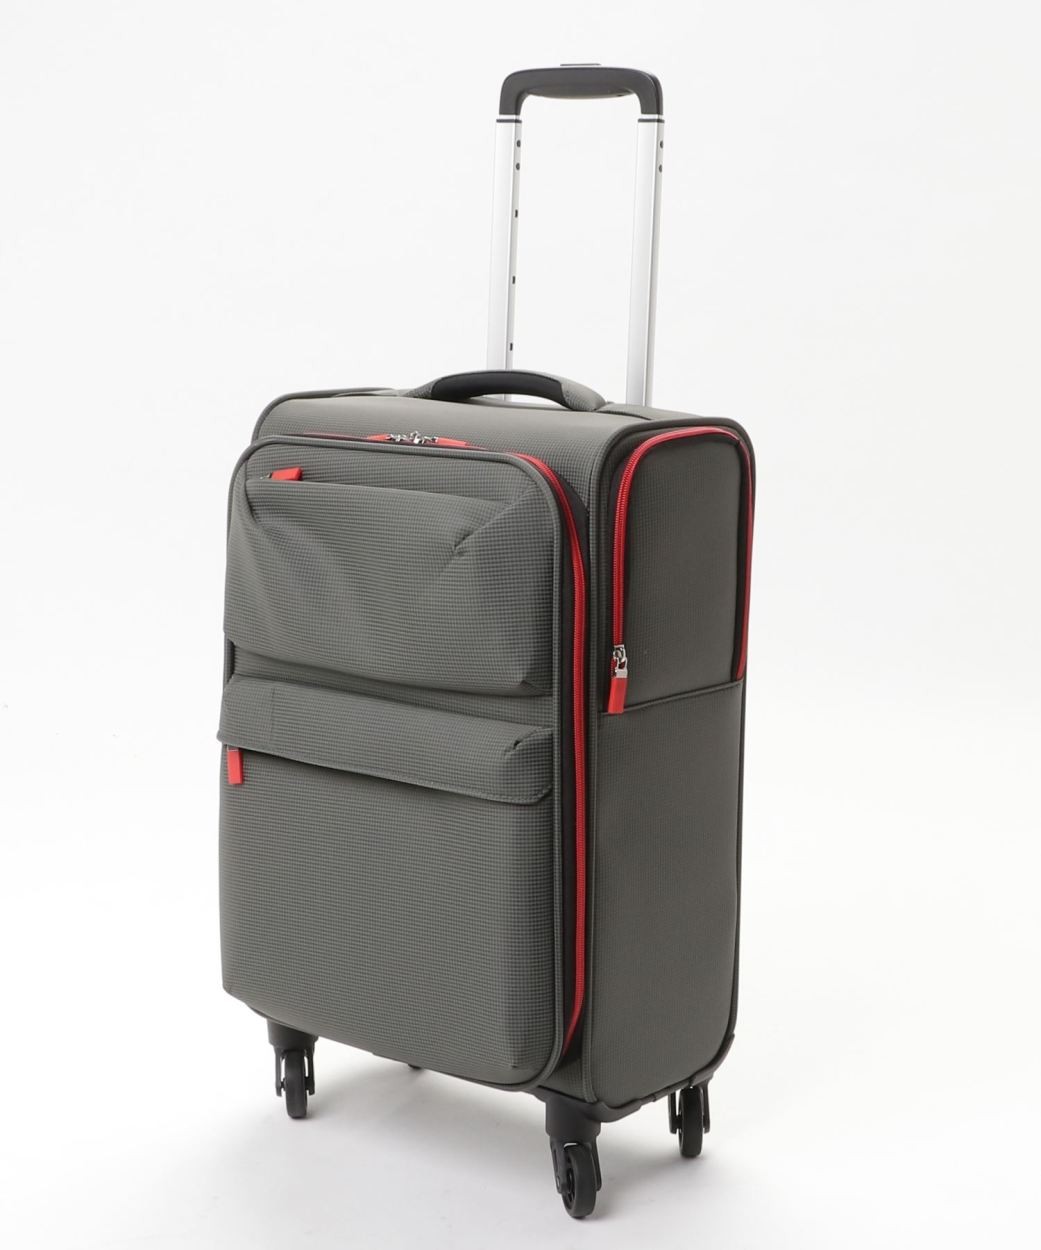 スーツケース 機内持ち込み 小型 軽量 ソフトケース キャリーバッグ キャリーケース ソフト 旅行かばん レジェンドウォーカー アウトレット